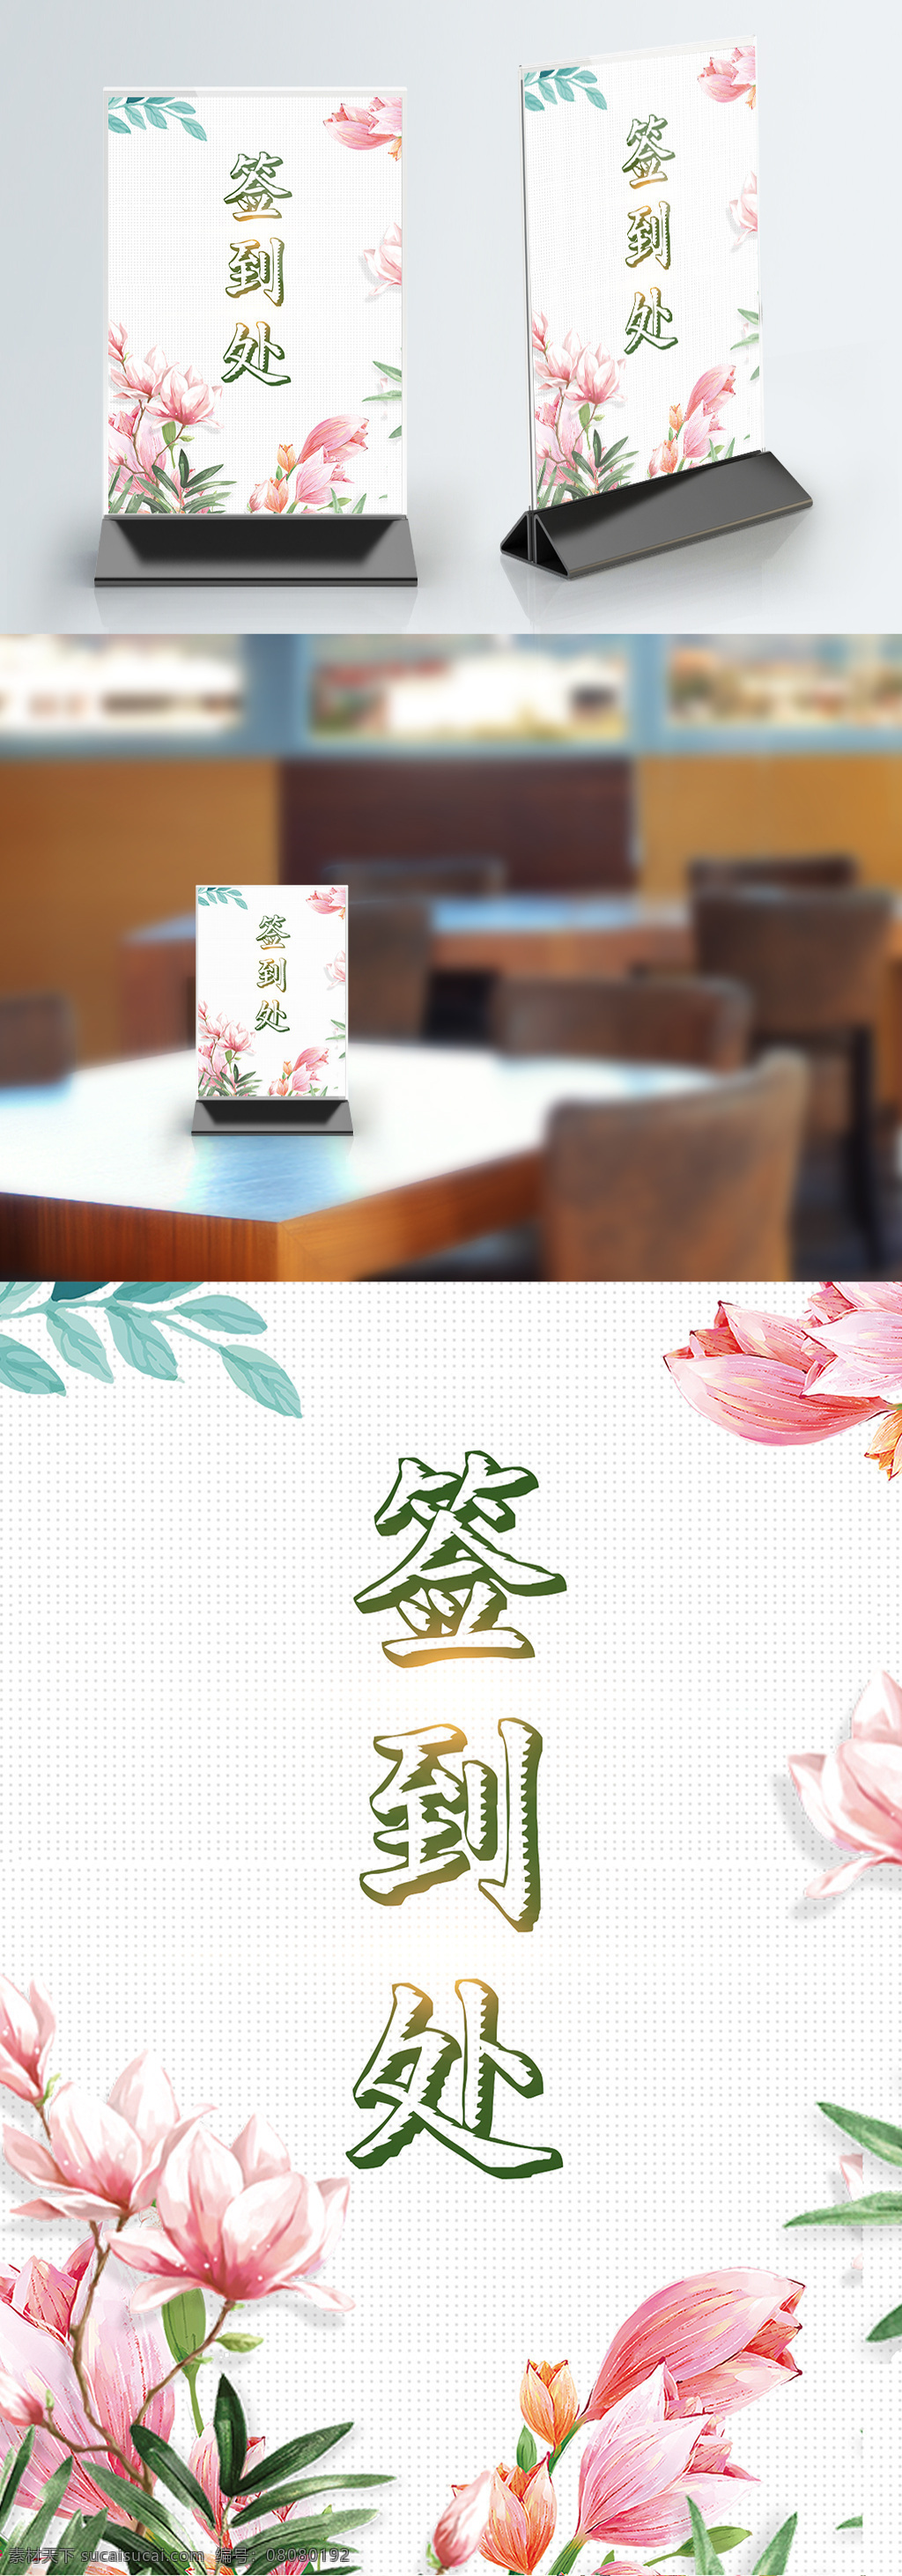 简约 小 清新 活动 签到 处 桌 卡 签到处 中国风 小清新 花朵 活动签到 桌卡 桌卡设计 台牌 桌牌设计